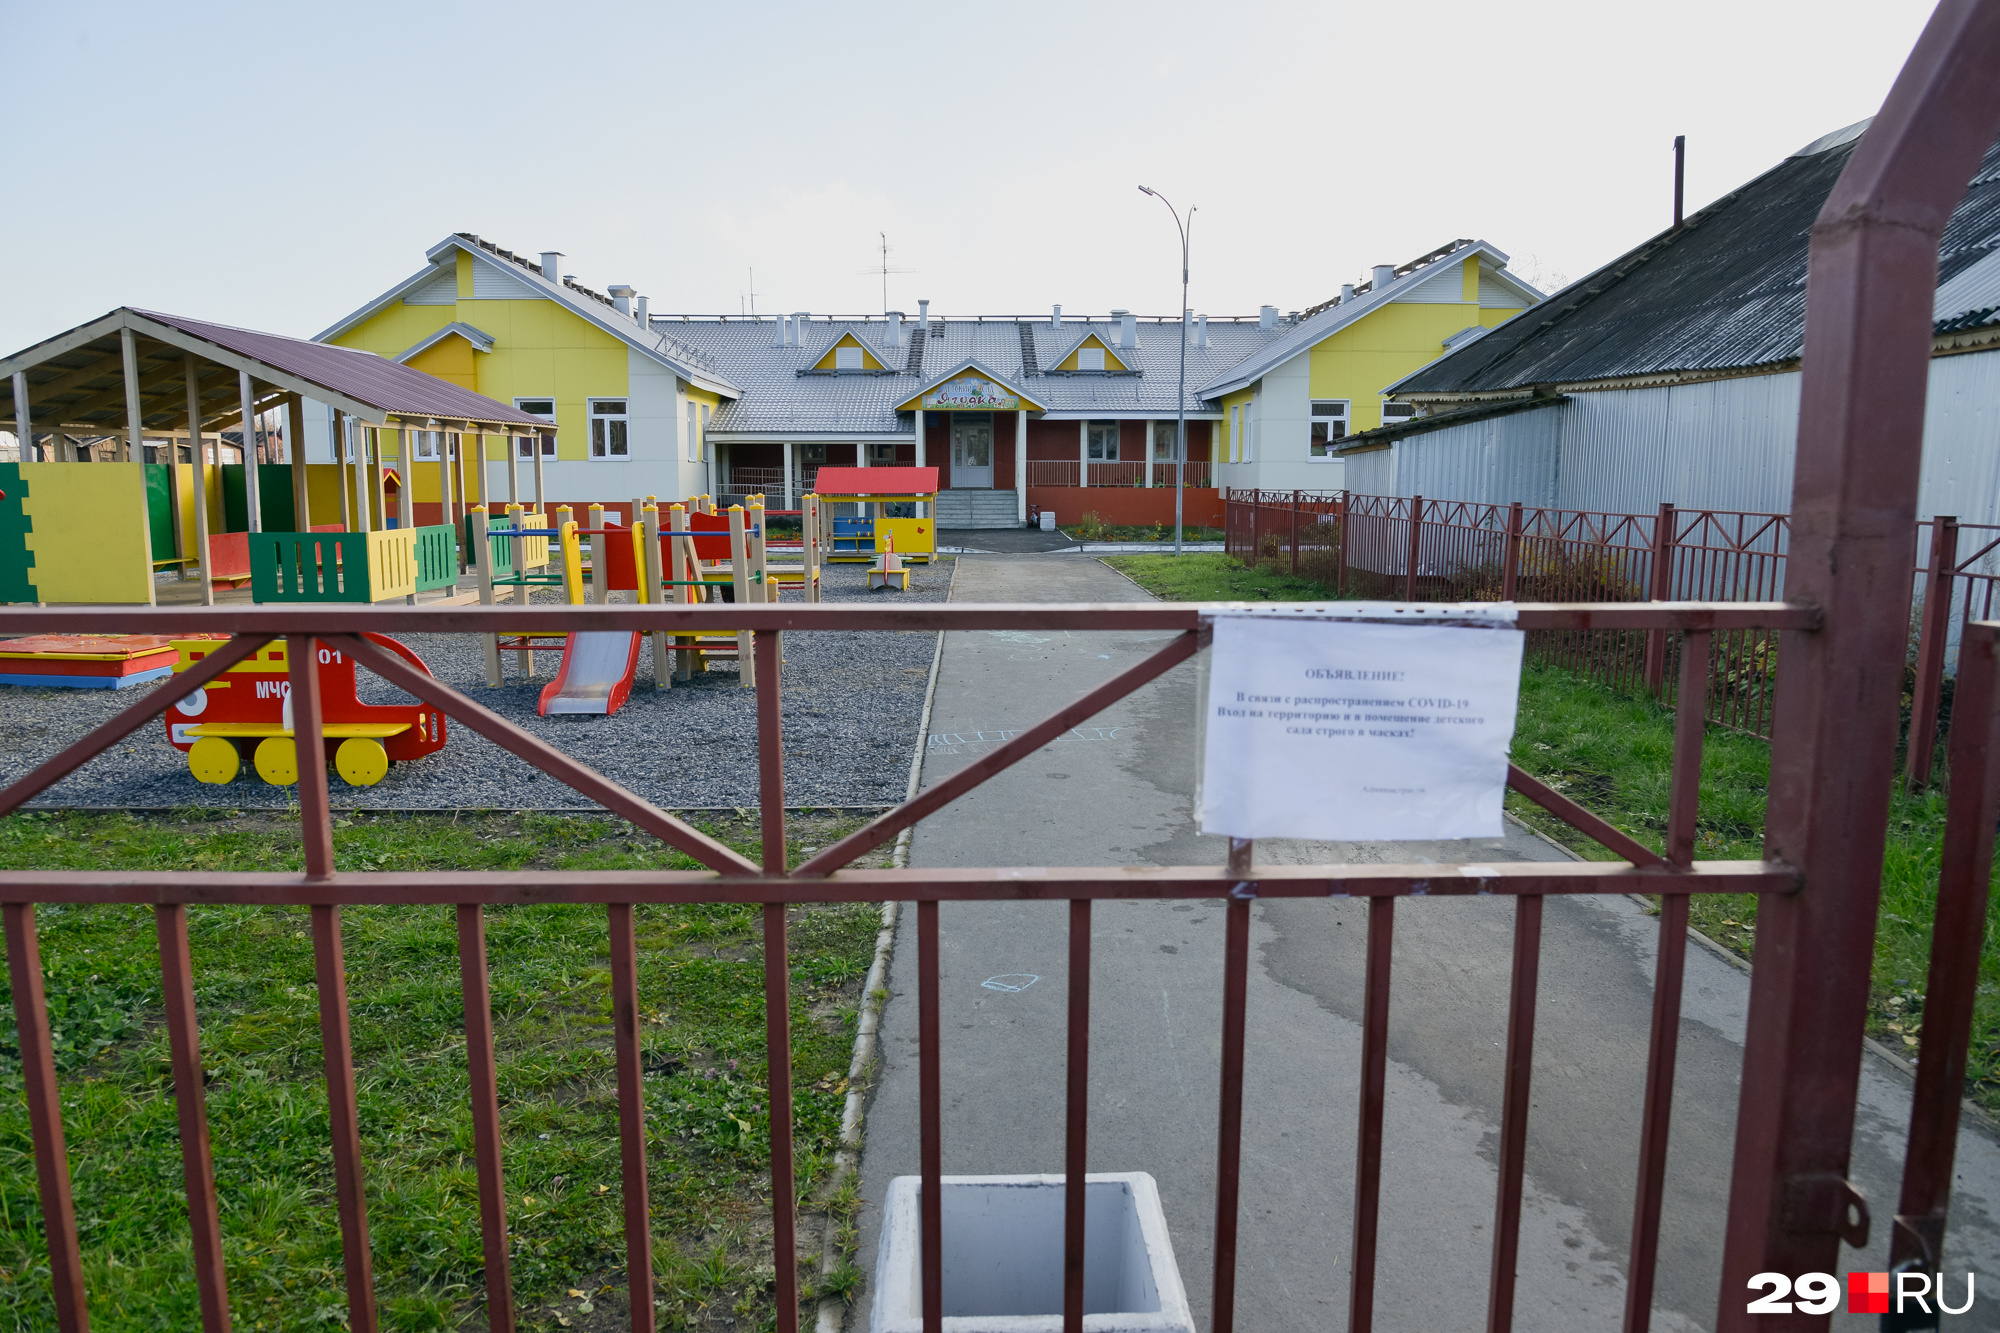 Детский сад местных жителей радует. Но они обвиняют его строителей в том, что разбили центральную дорогу в поселке